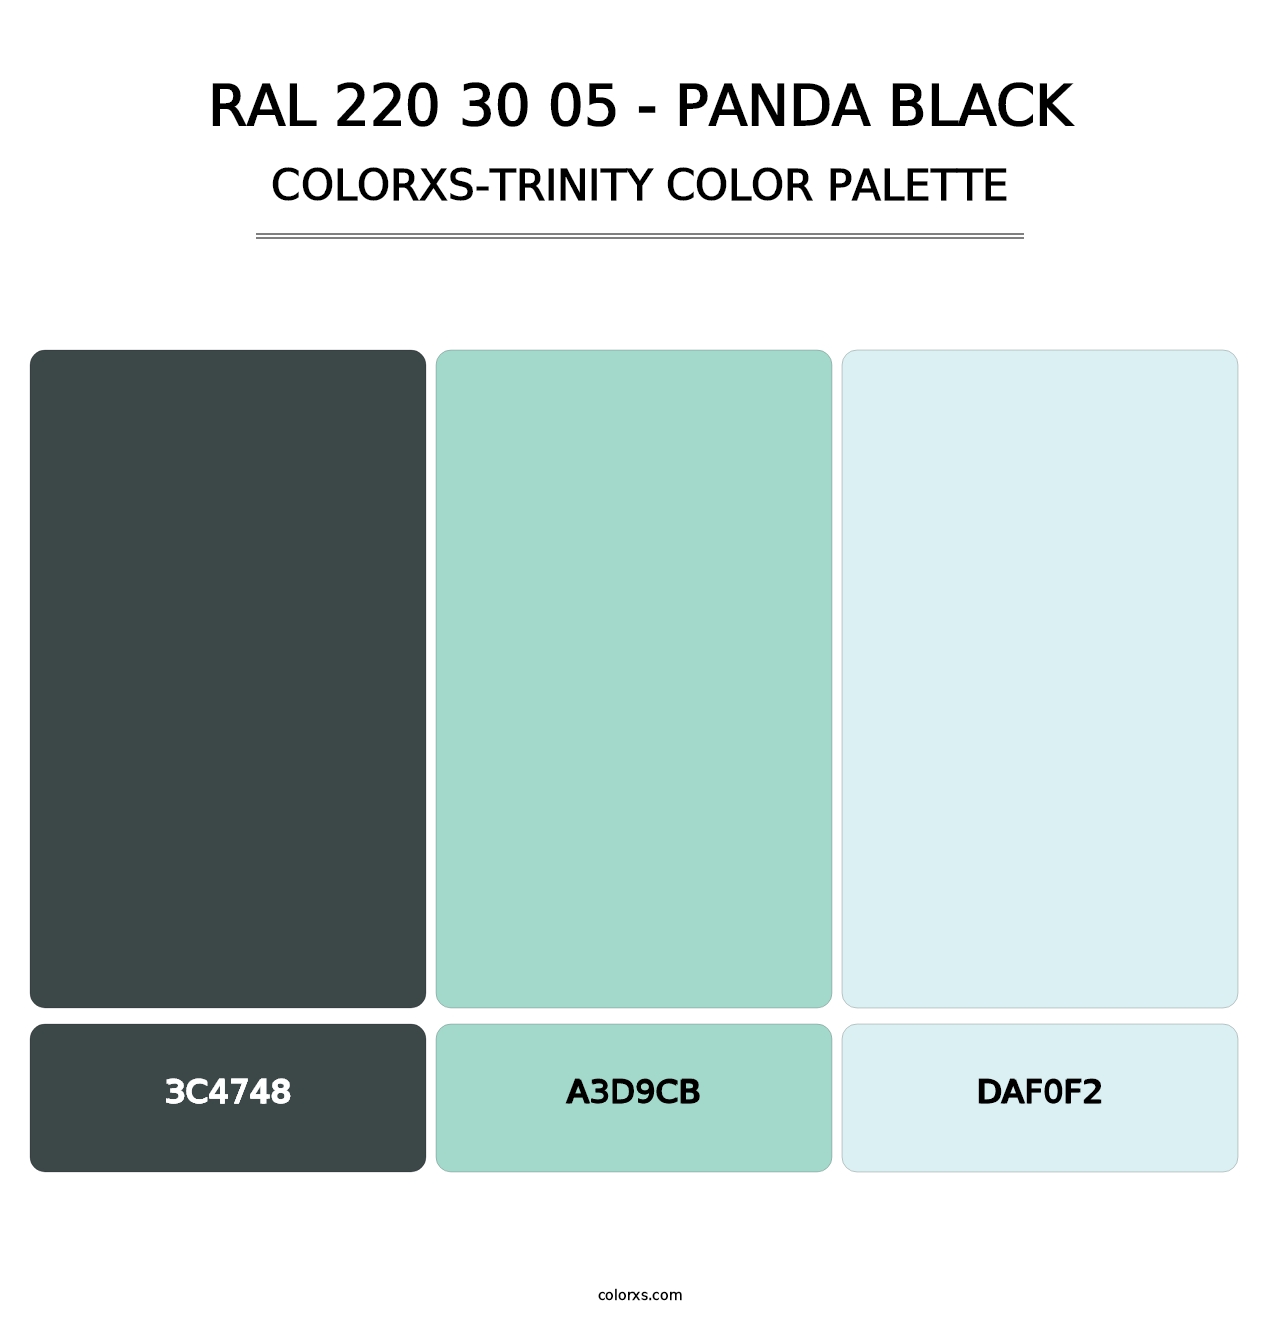 RAL 220 30 05 - Panda Black - Colorxs Trinity Palette